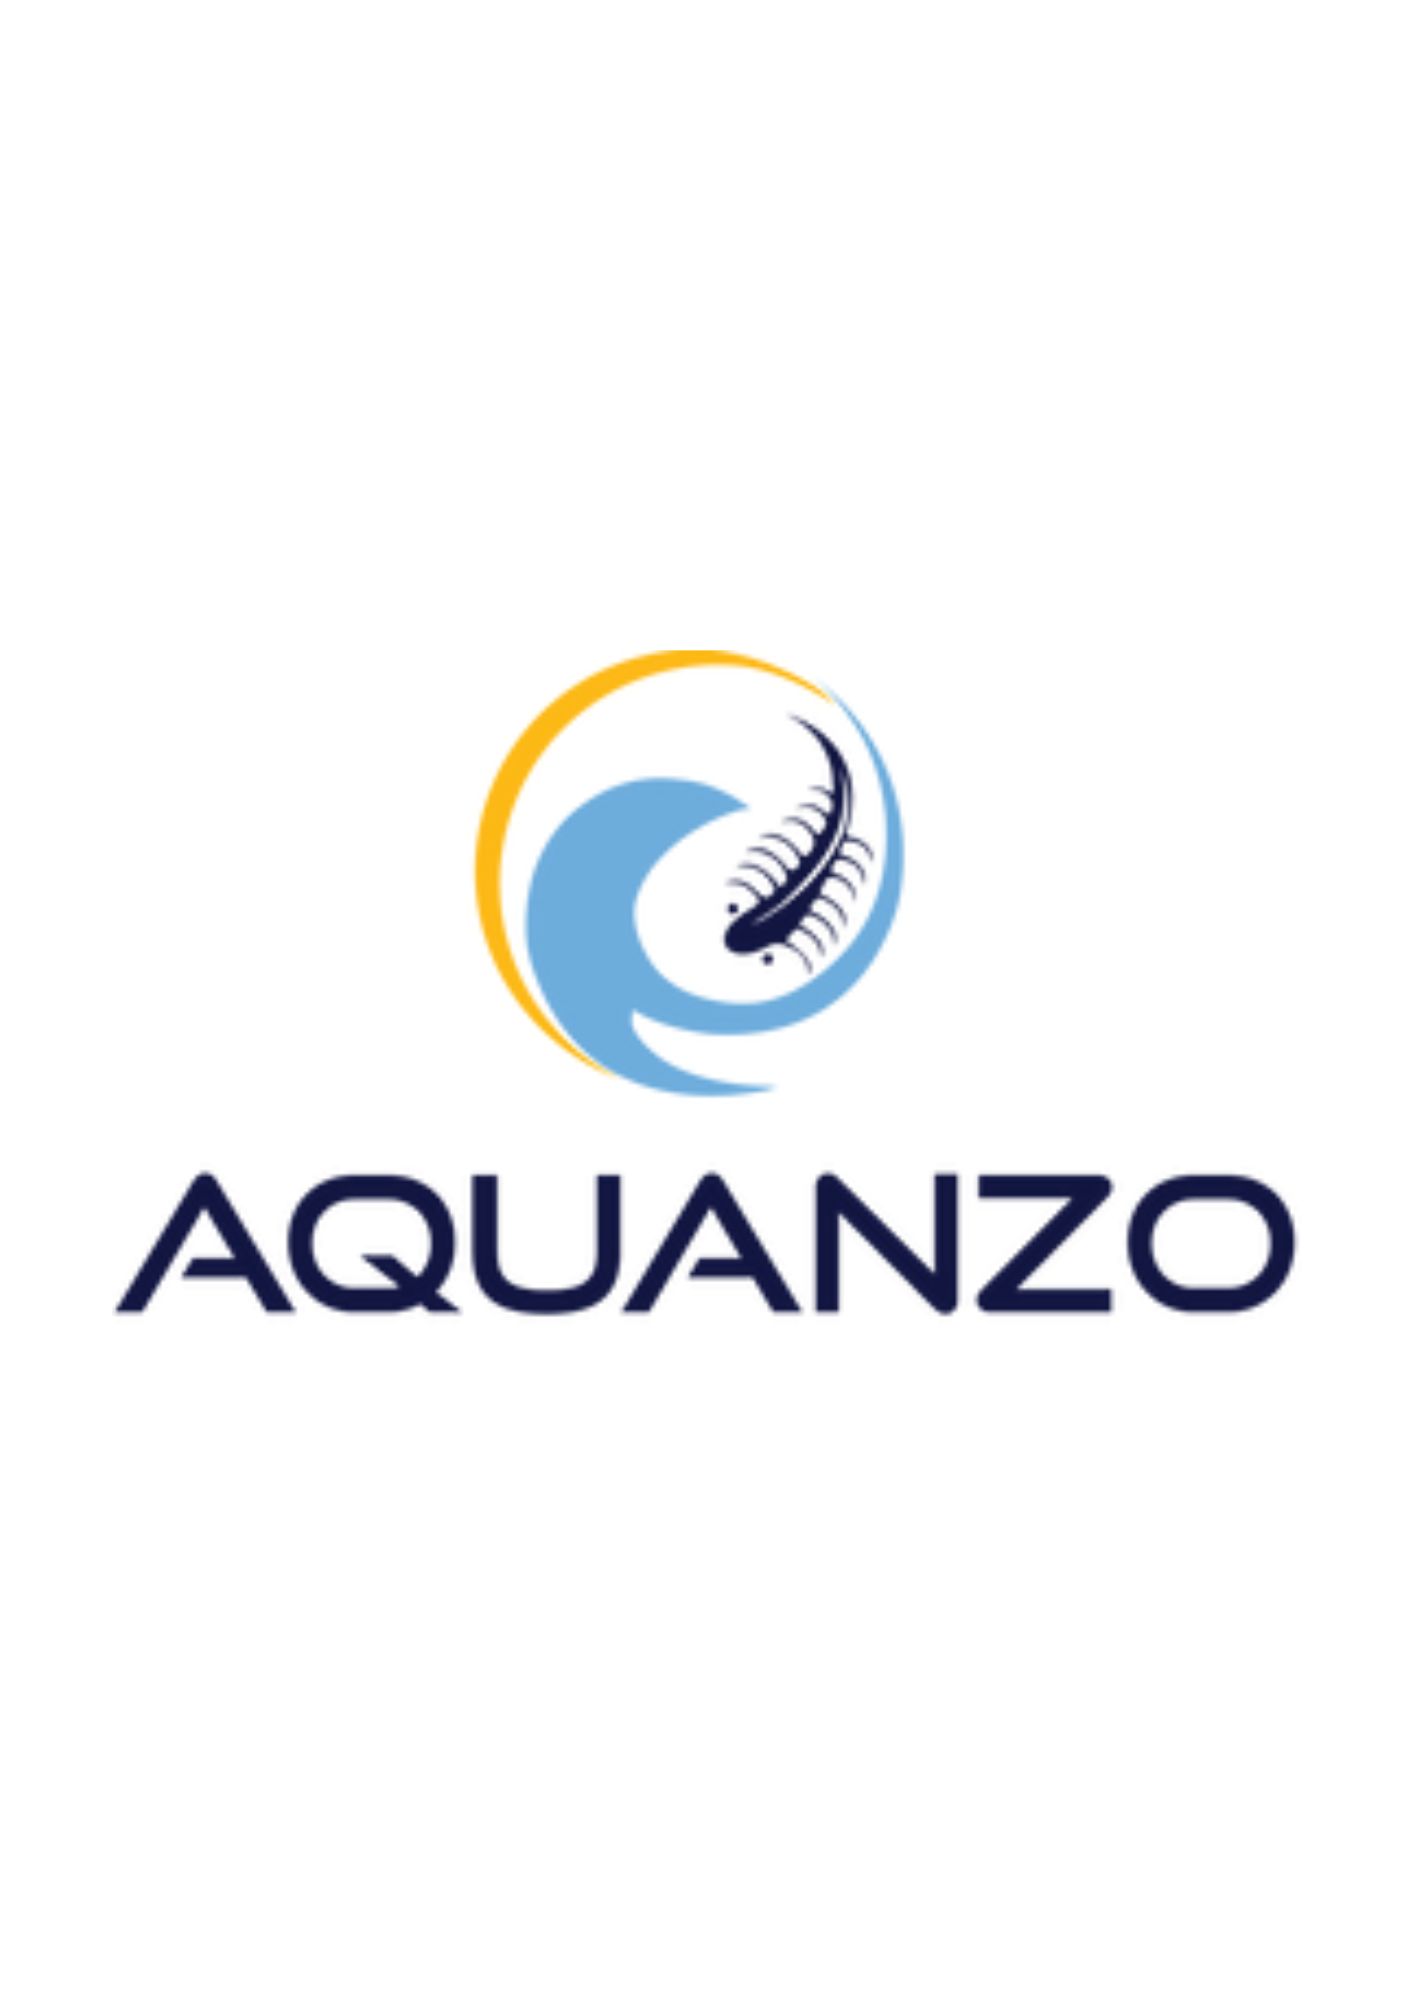 Aquanzo